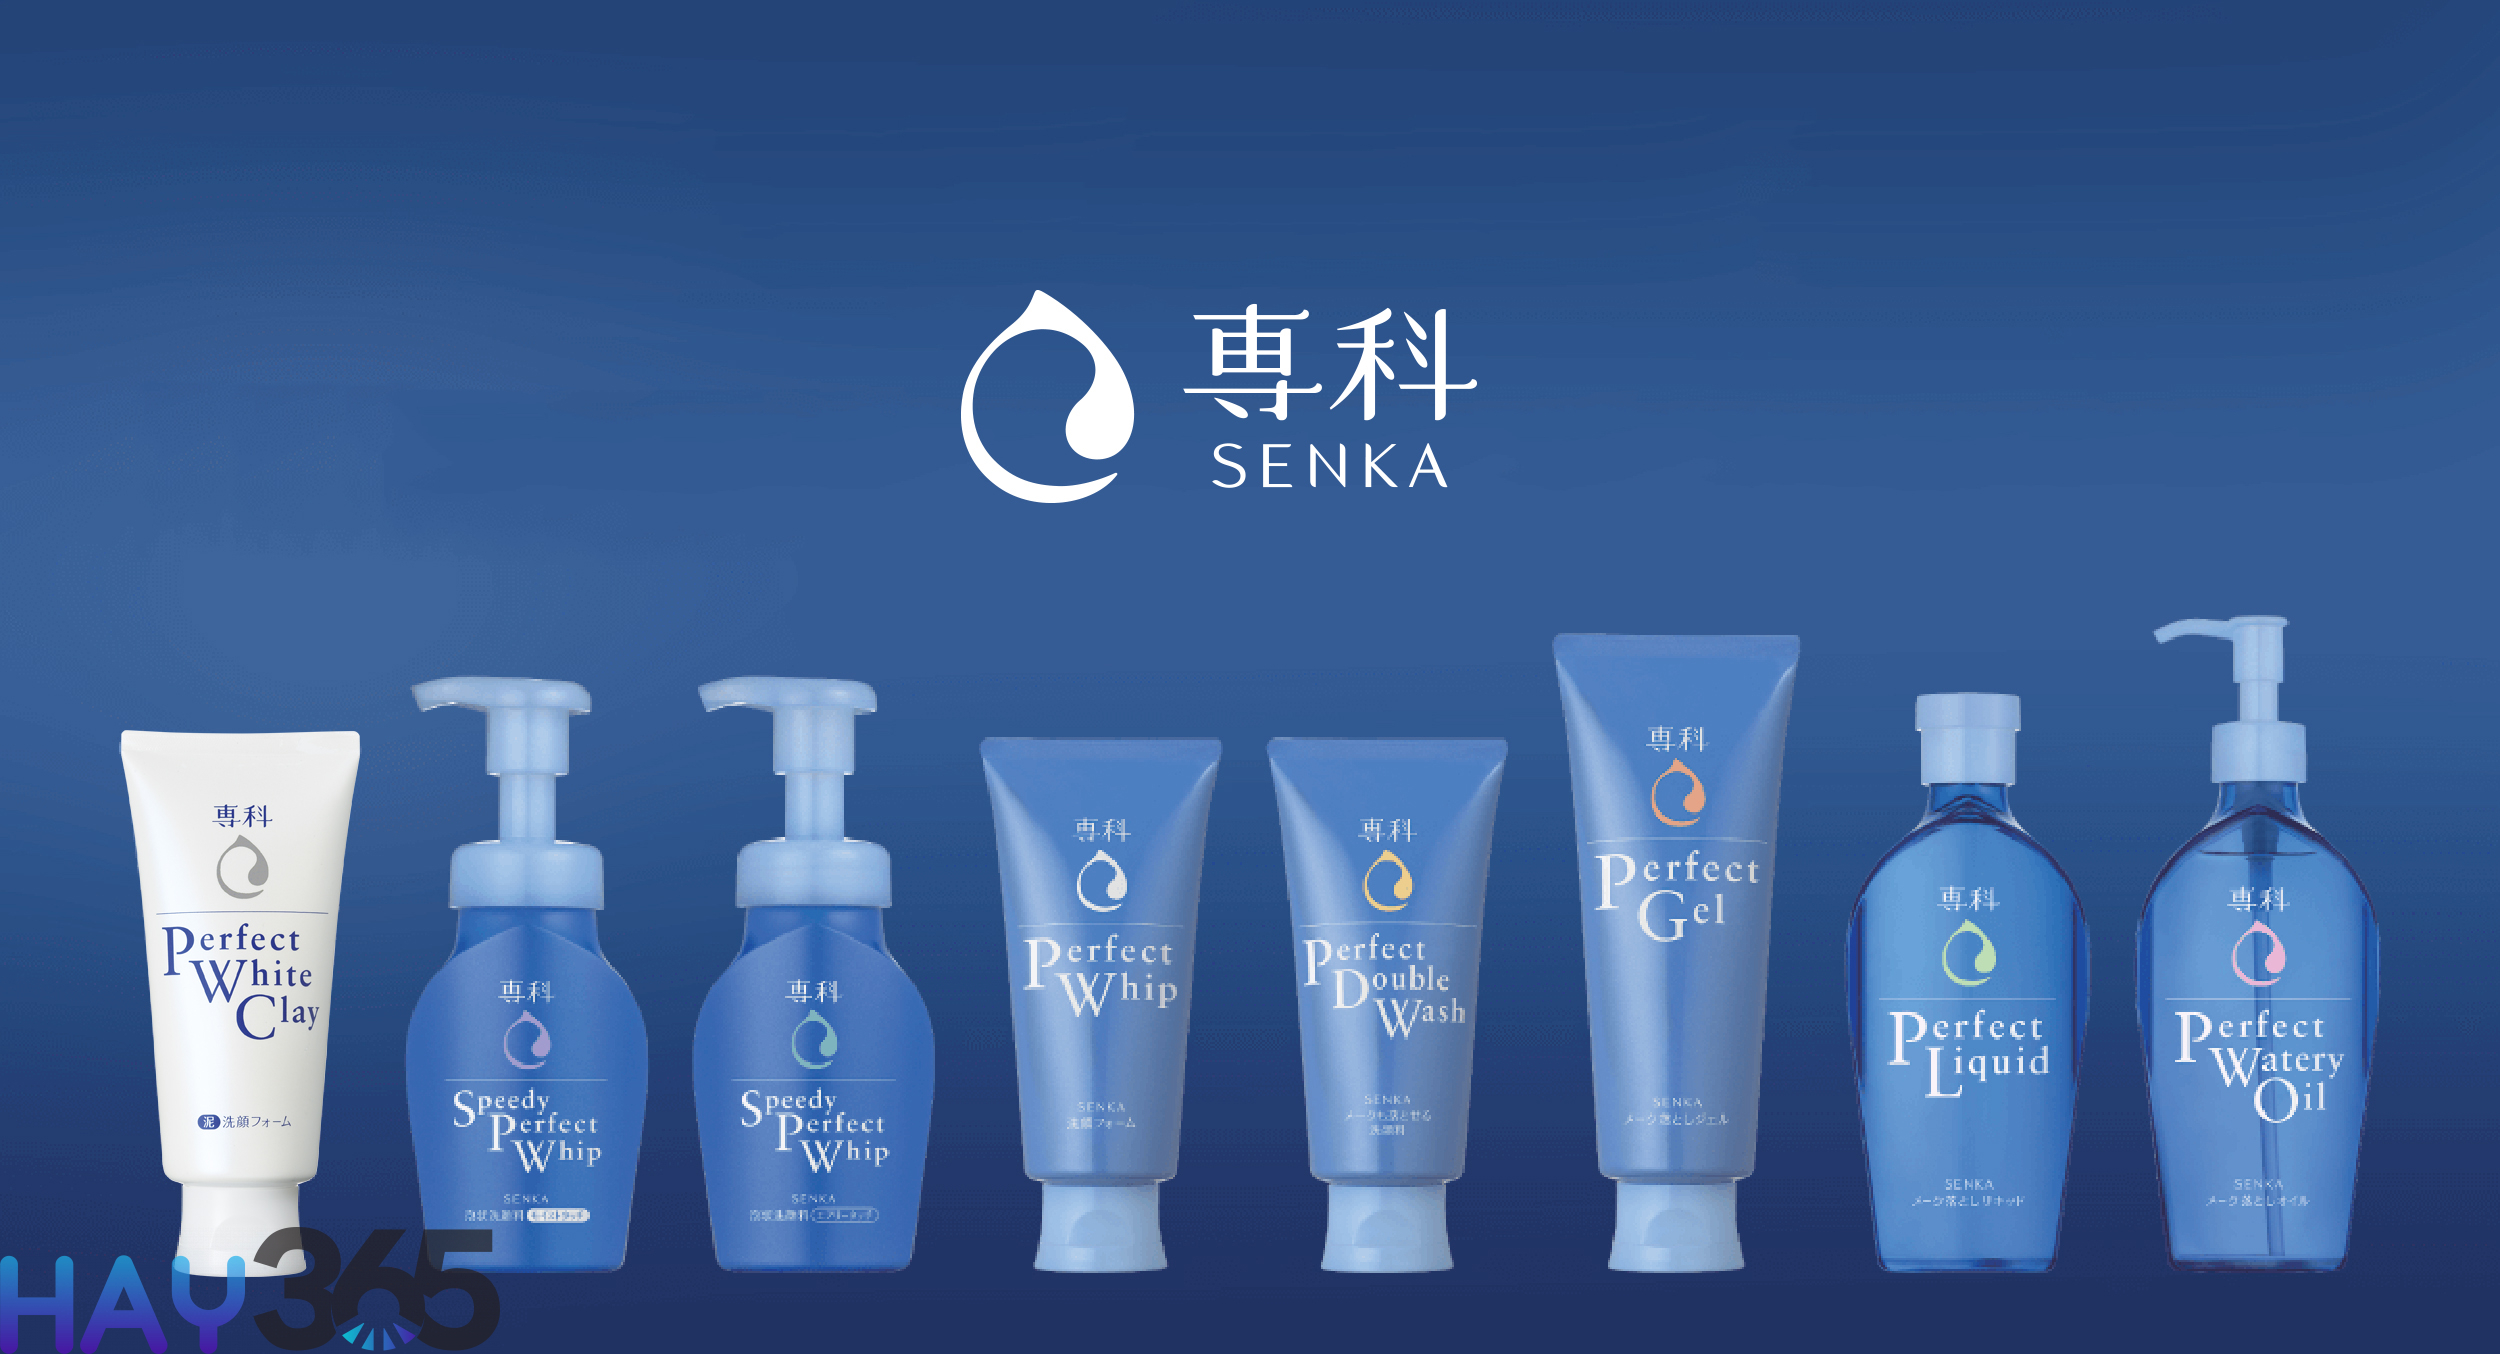 Senka thuộc Tập đoàn mỹ phẩm Shiseido Nhật Bản